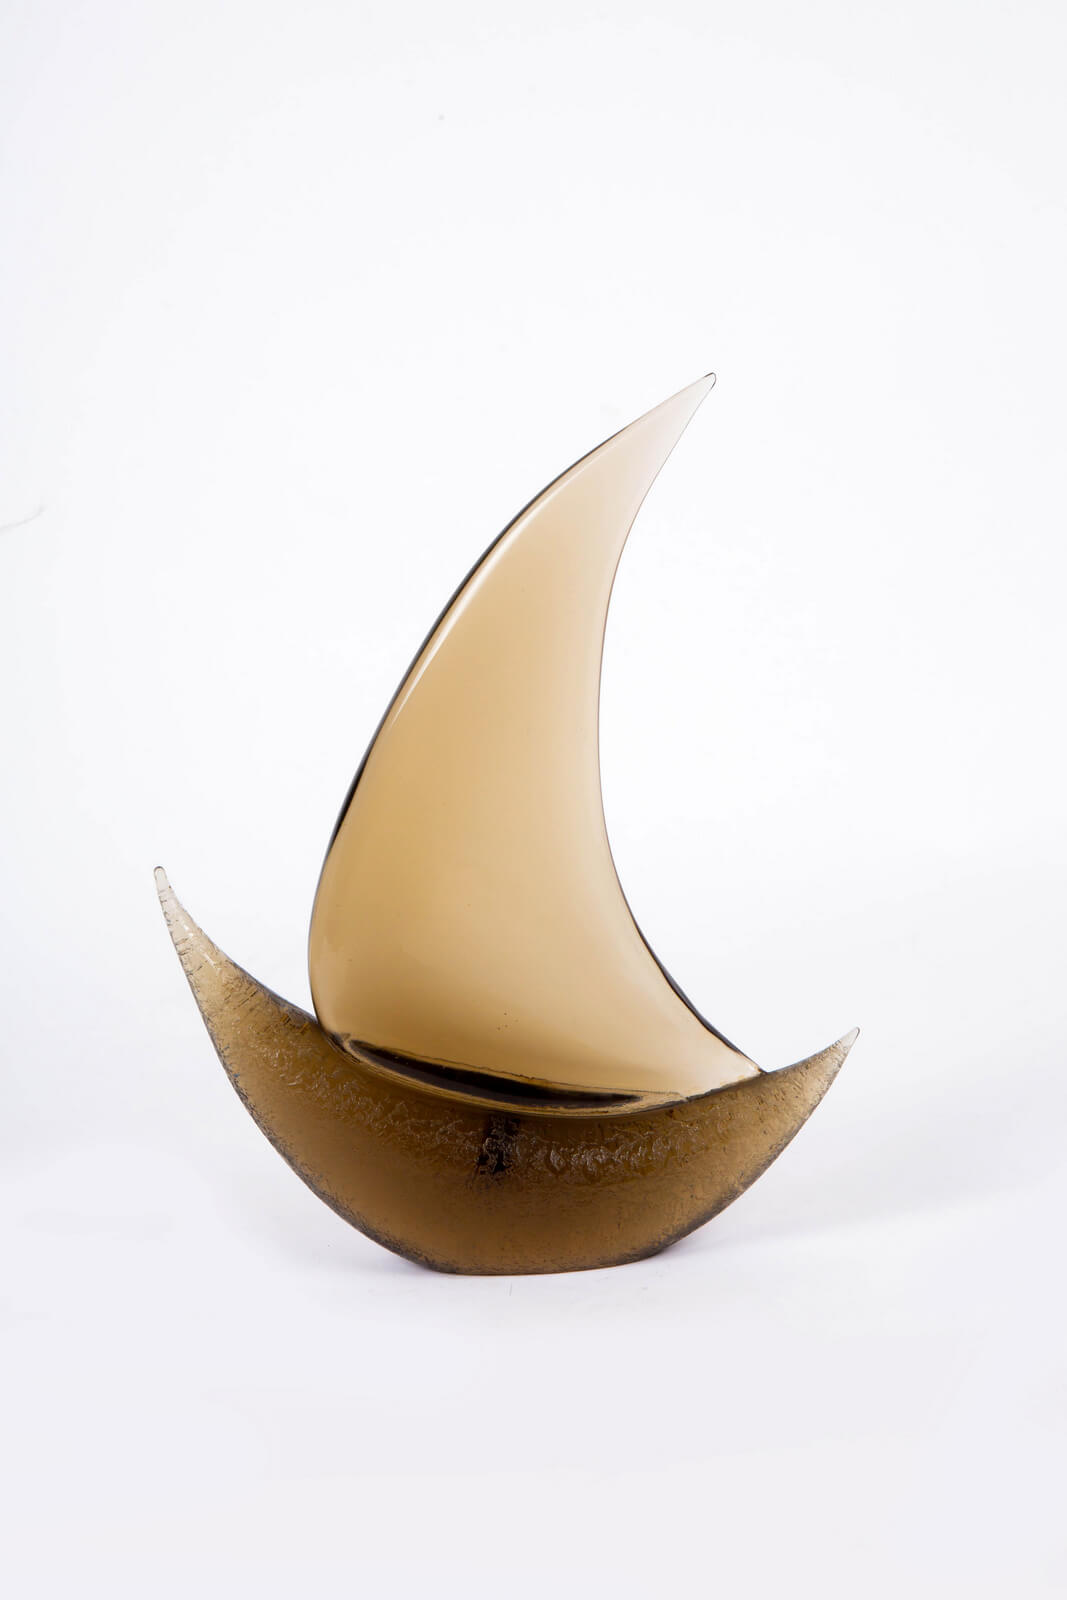 Figure Boat by Flavio Poli for sale